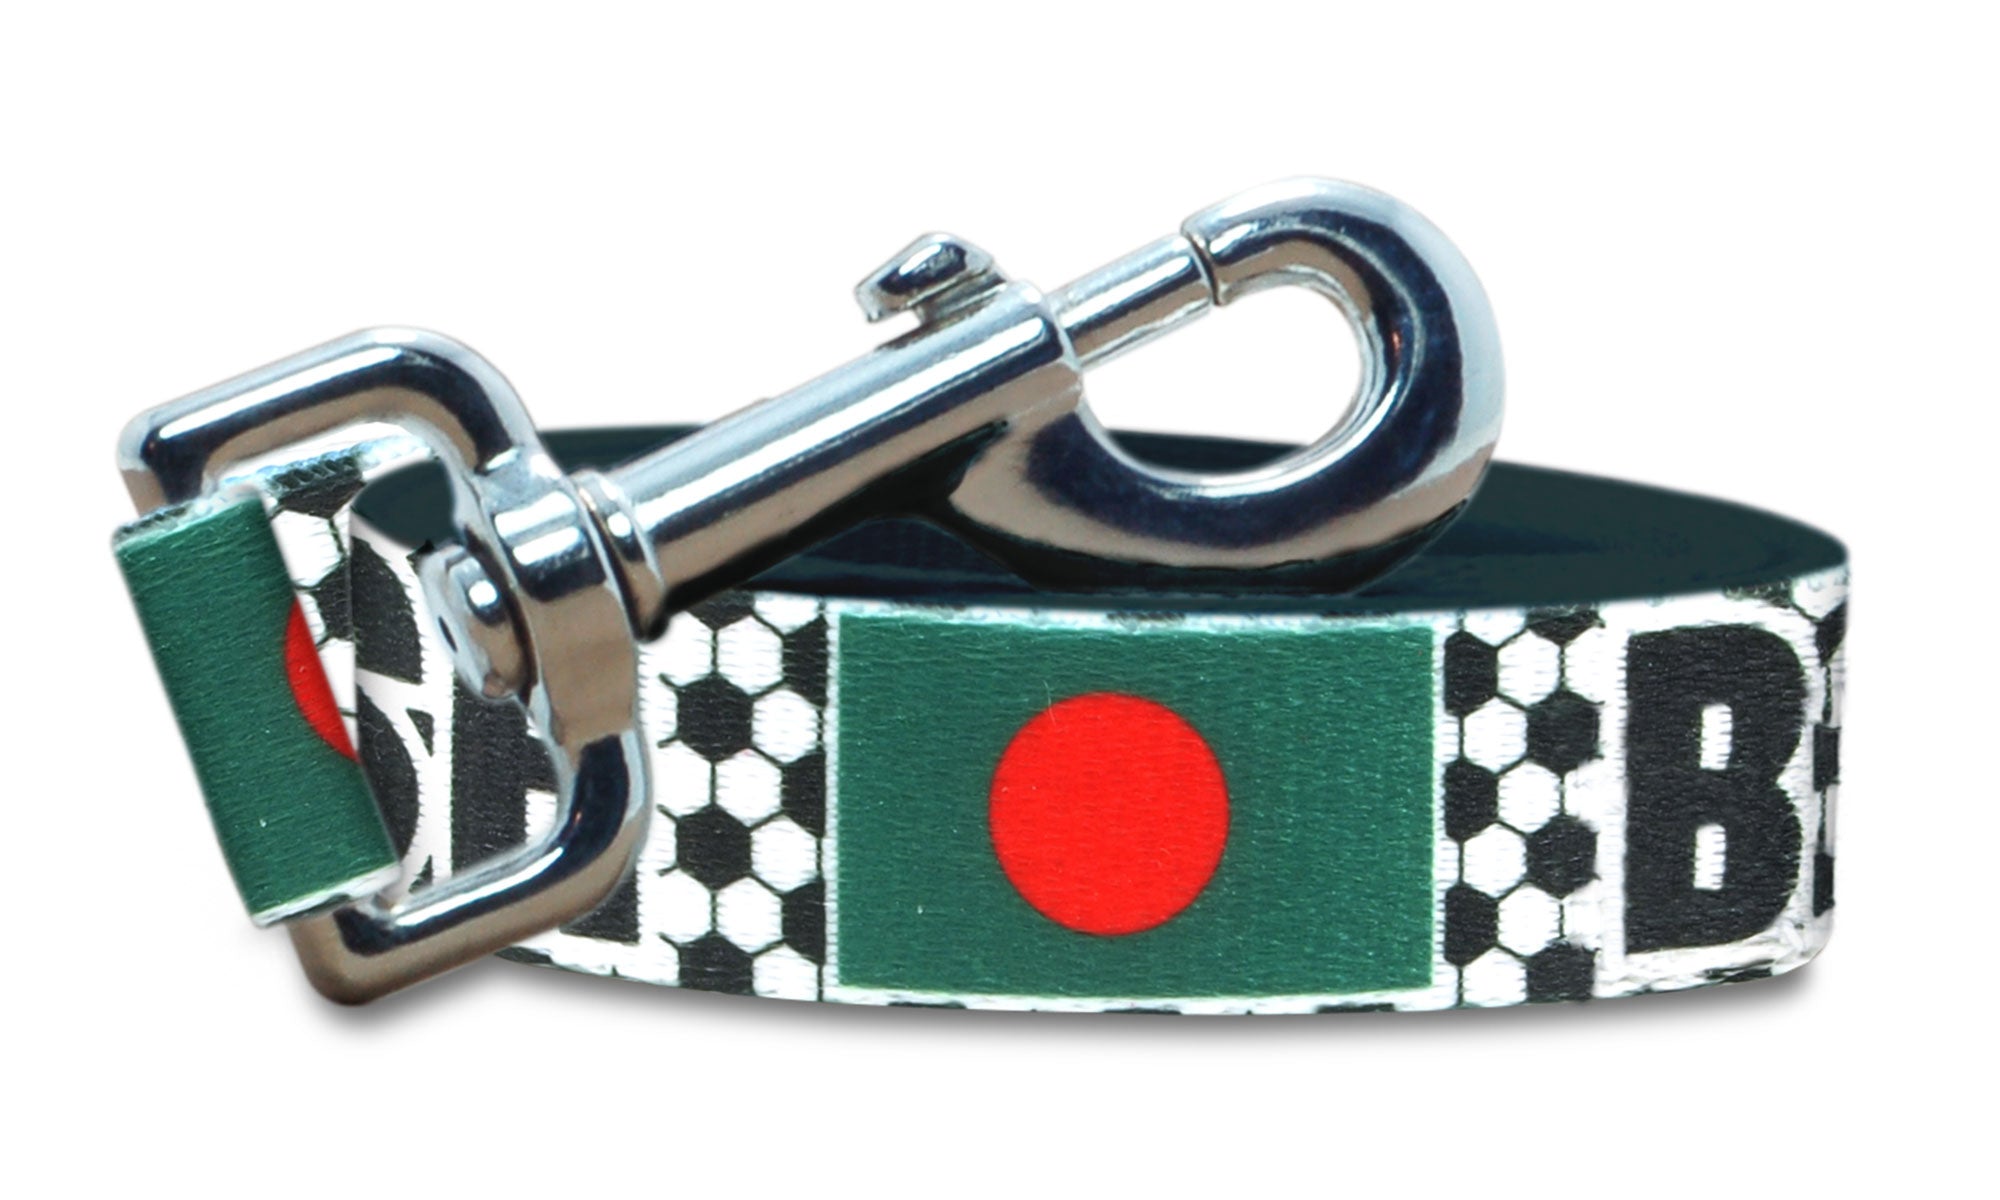 Bangladesh Dog Leash for Soccer Fans | Black or Pink | 6 or 4 Foot